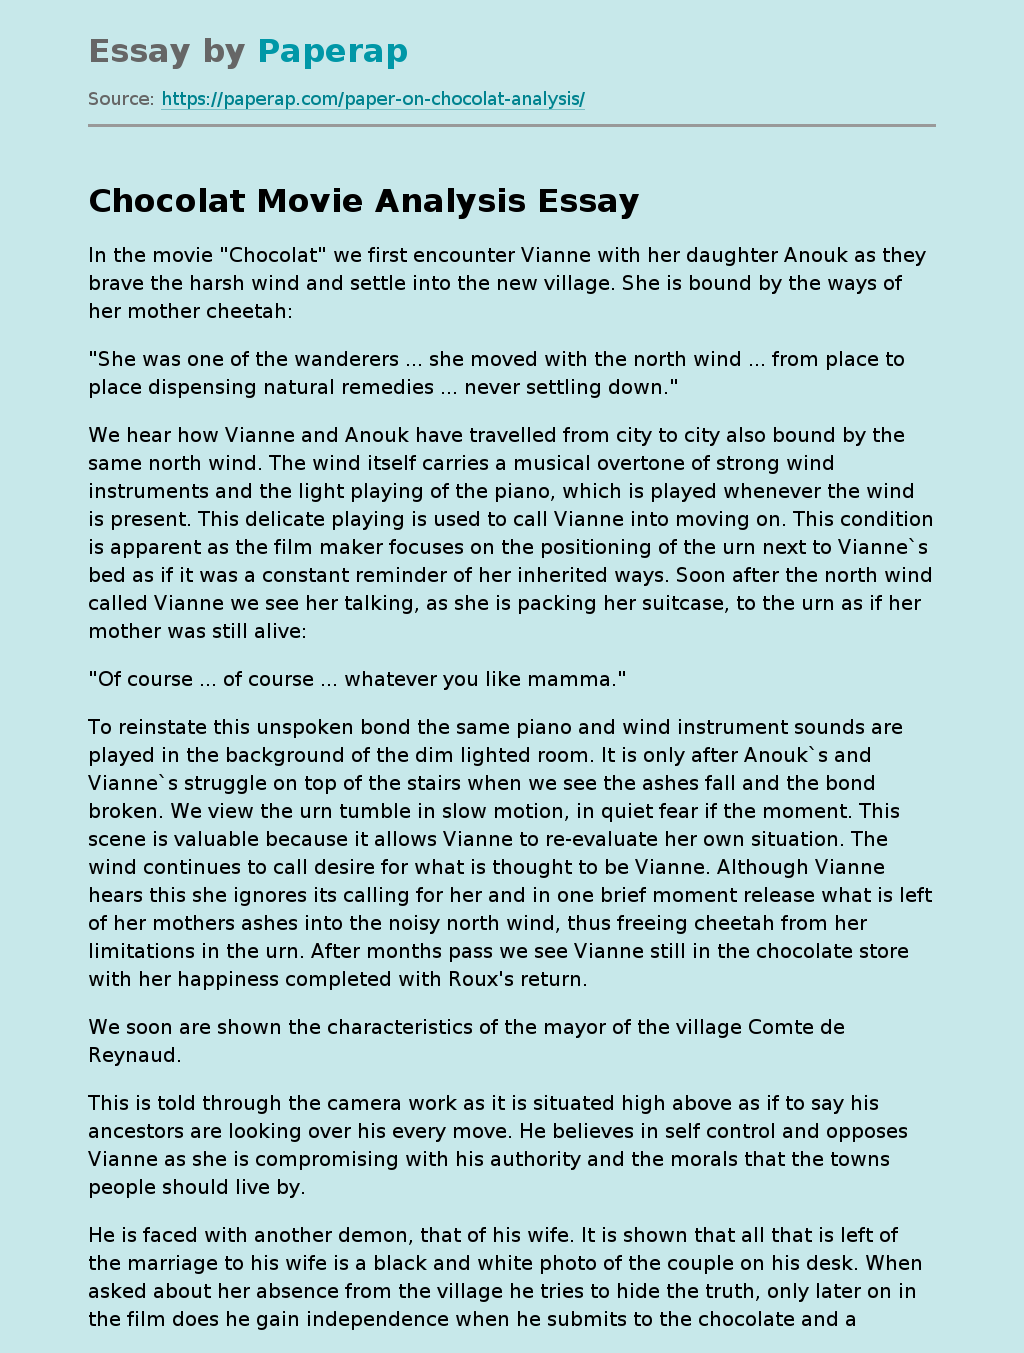 Chocolat Movie Analysis